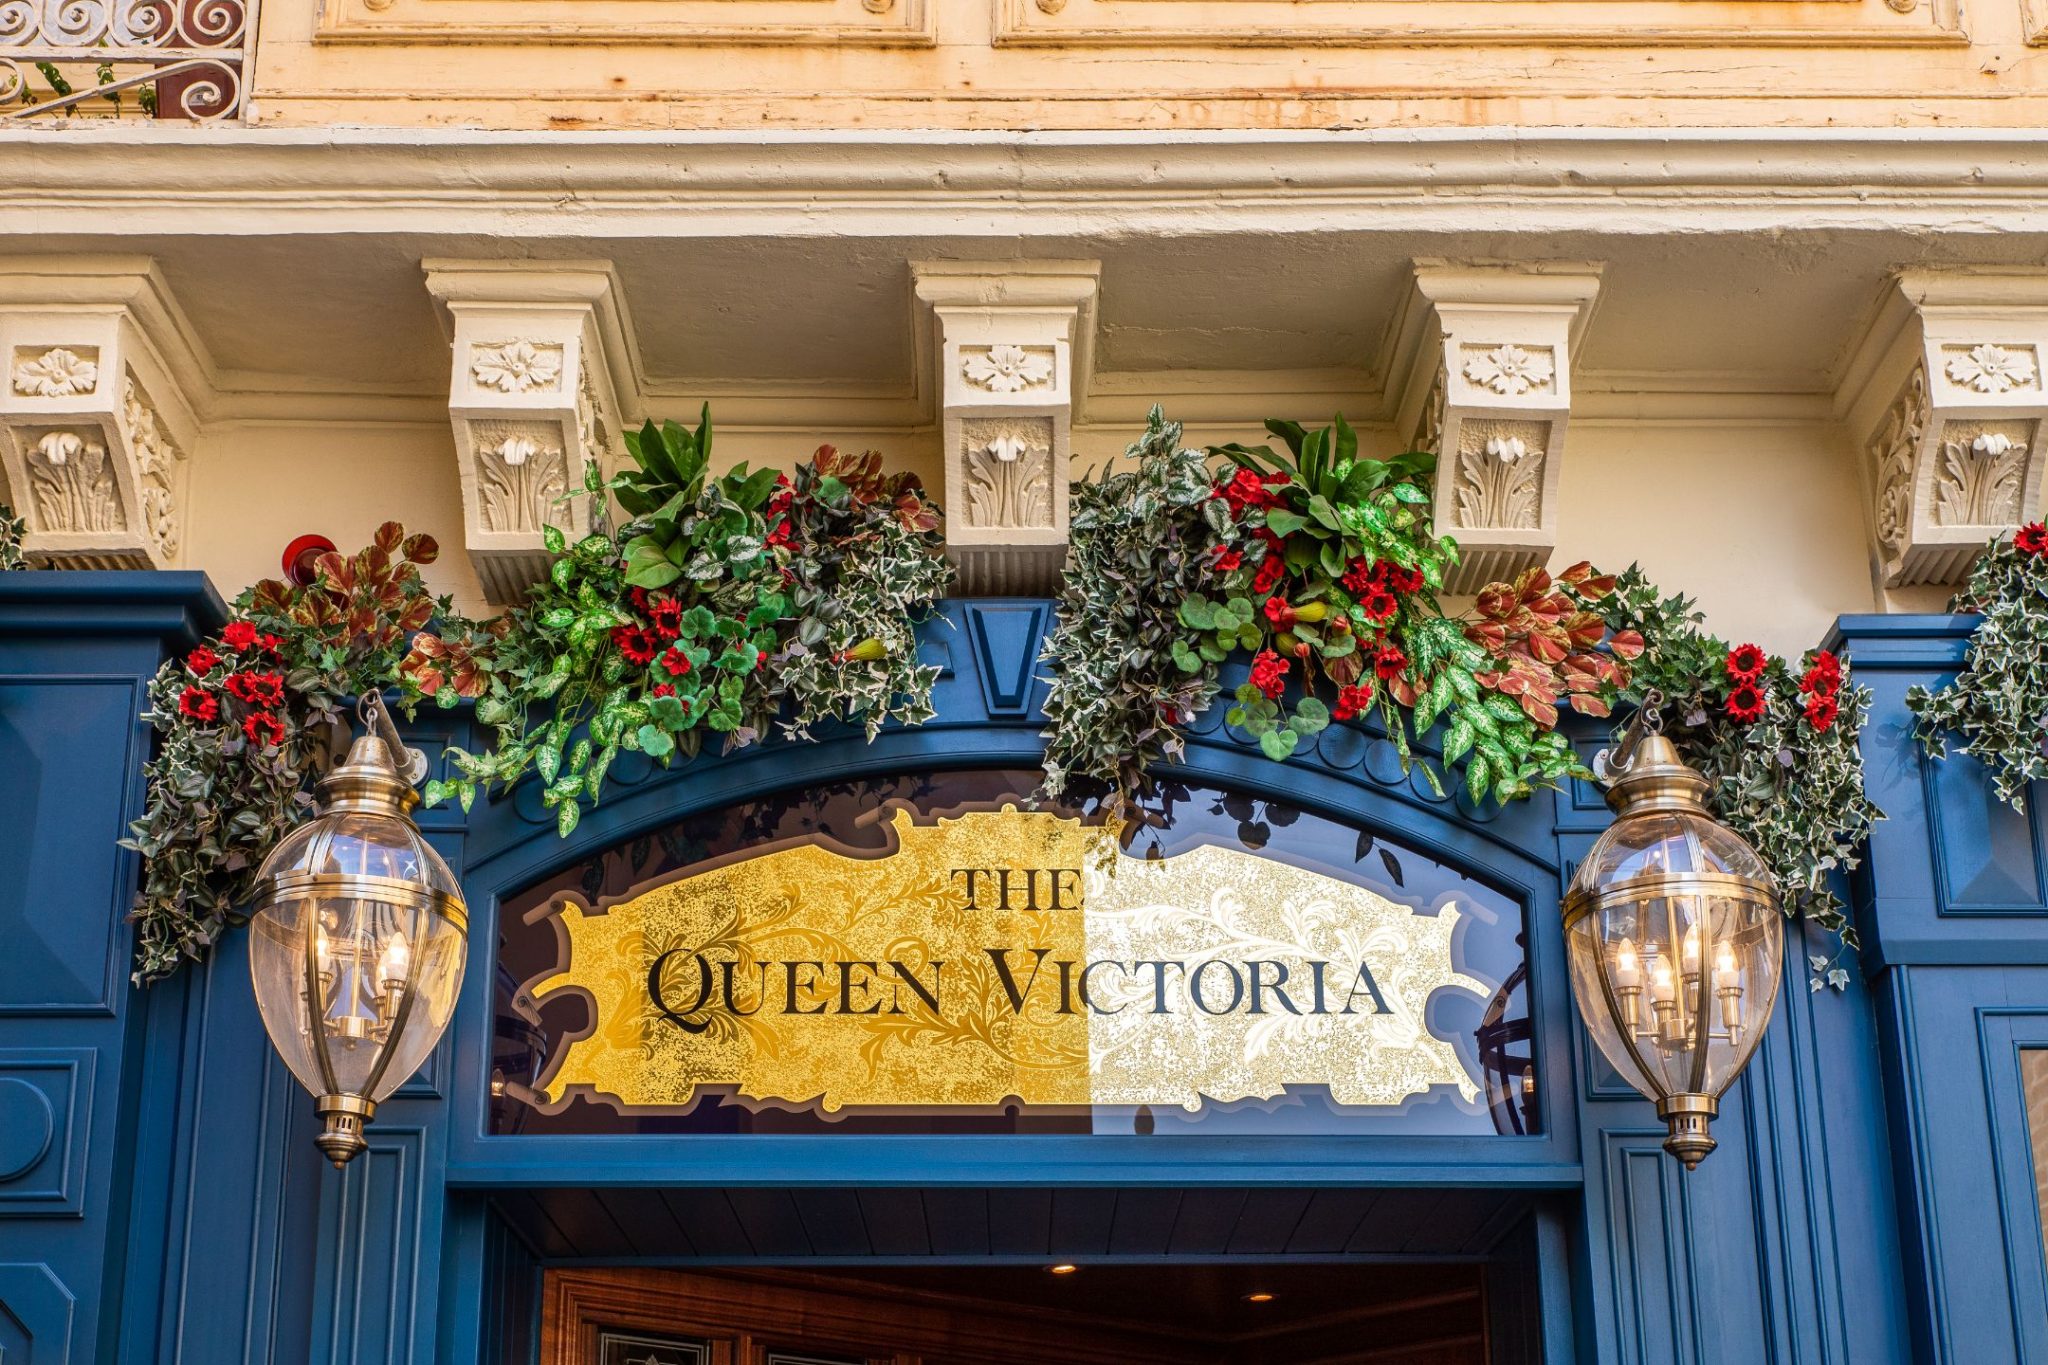 Victorian Style Pub in Malta entrance sign.